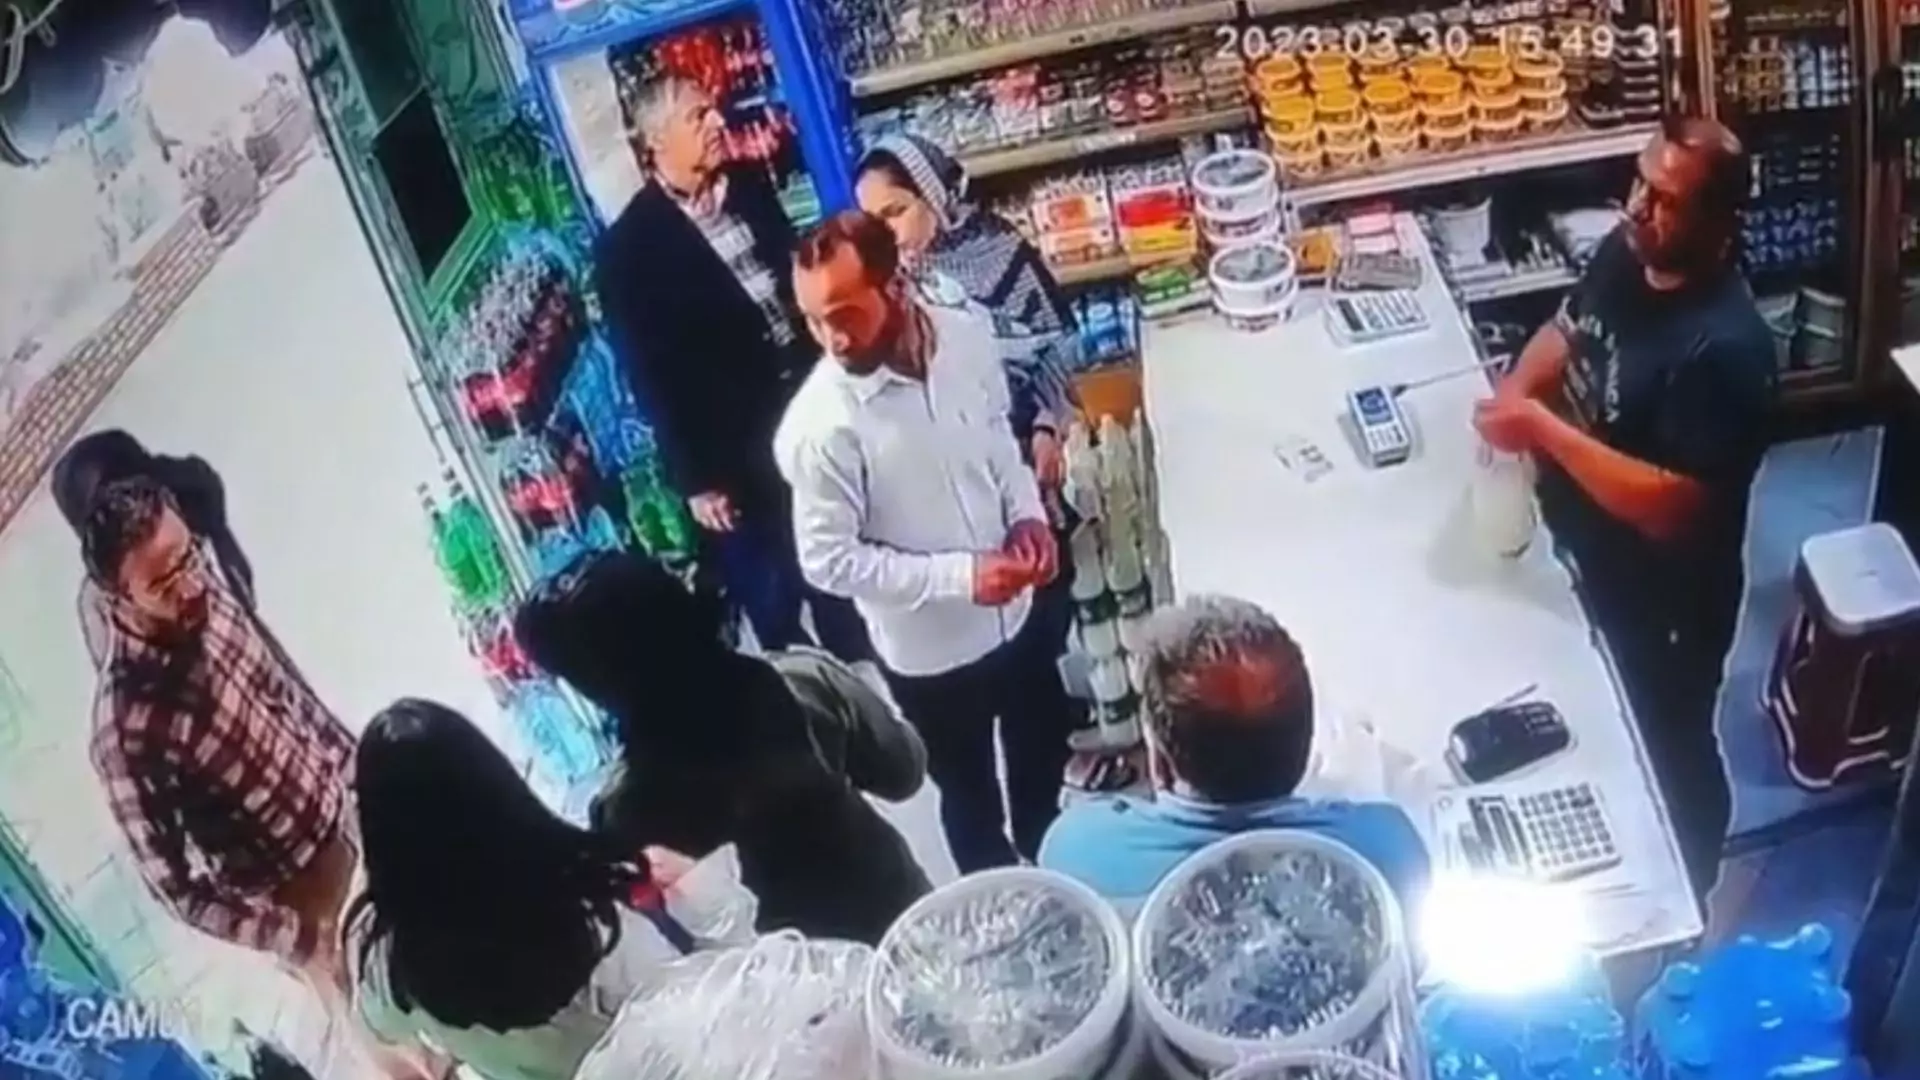 Za brak hidżabów zaatakował jogurtem dwie kobiety. Aresztowano całą trójkę